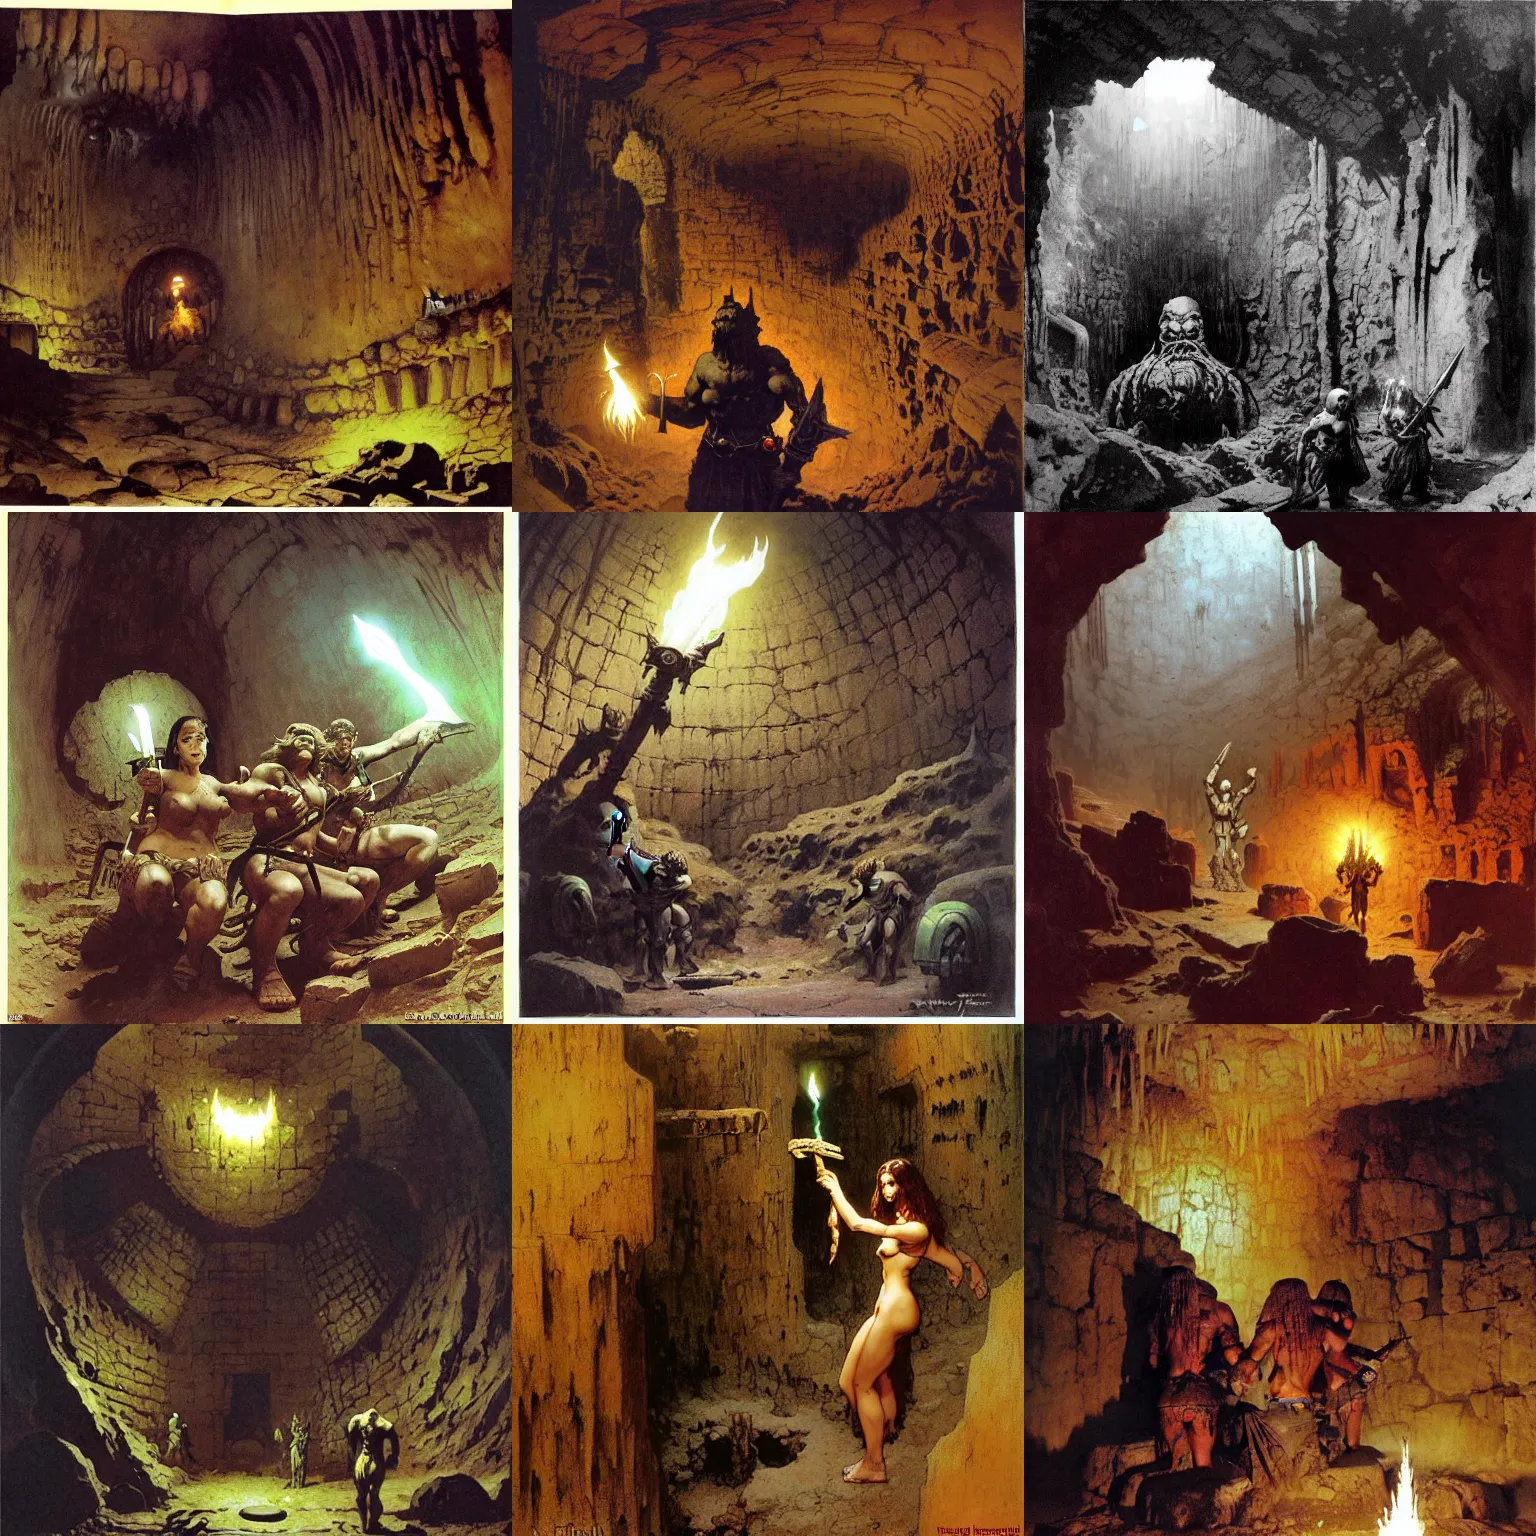 Prompt: inside ancient torch lit abandoned dwarven mine underground by frank frazetta, ken kelly, simon bisley, richard corben, william - adolphe bouguereau